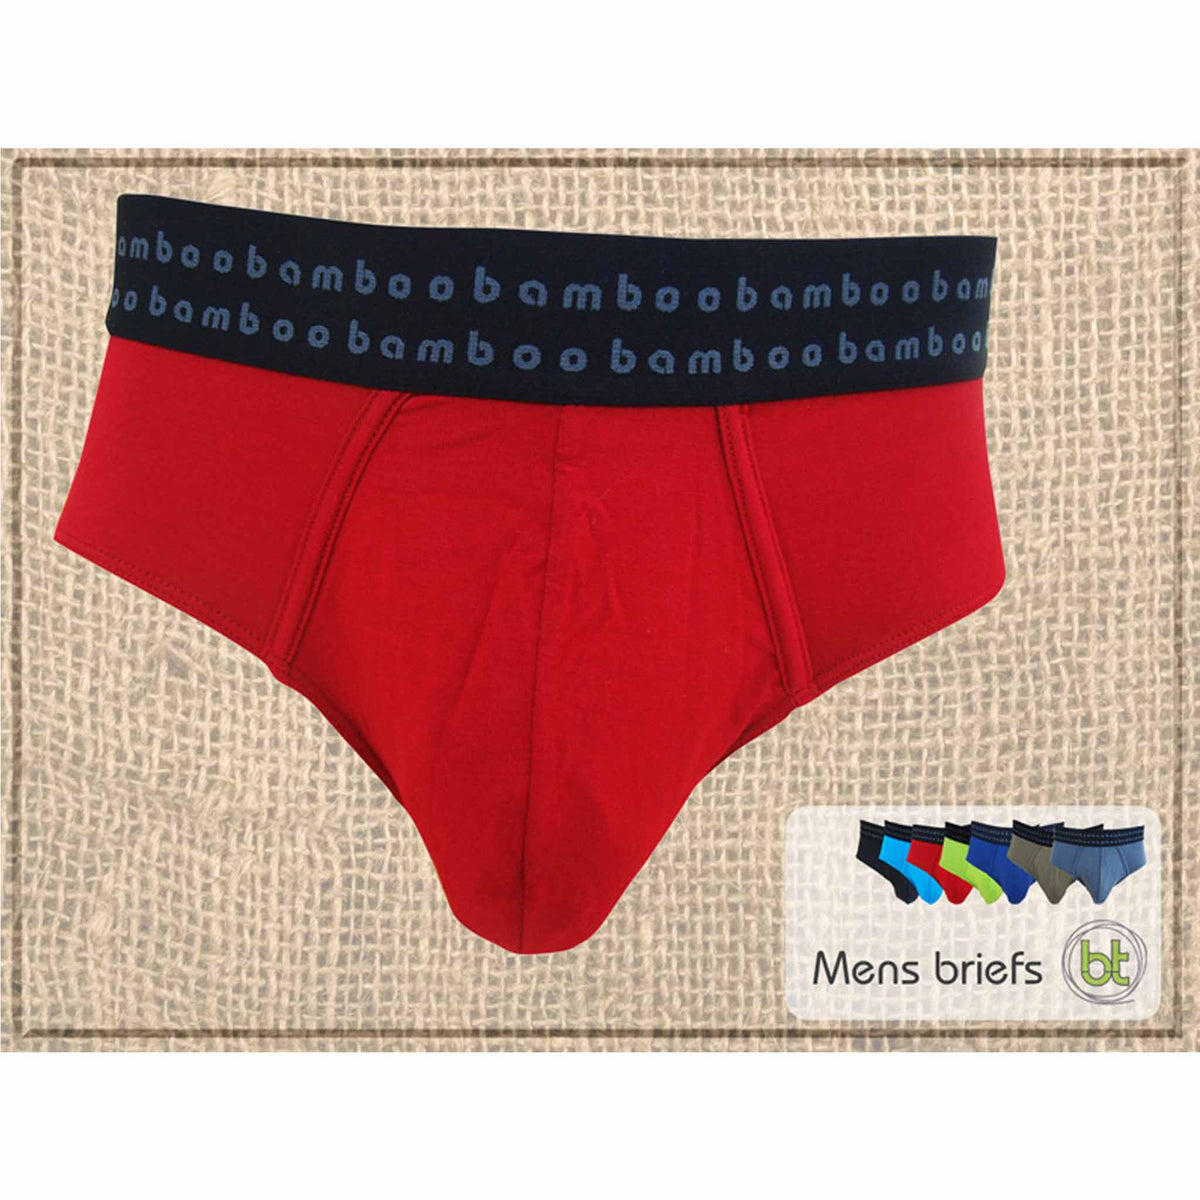 bamboo brief underwear